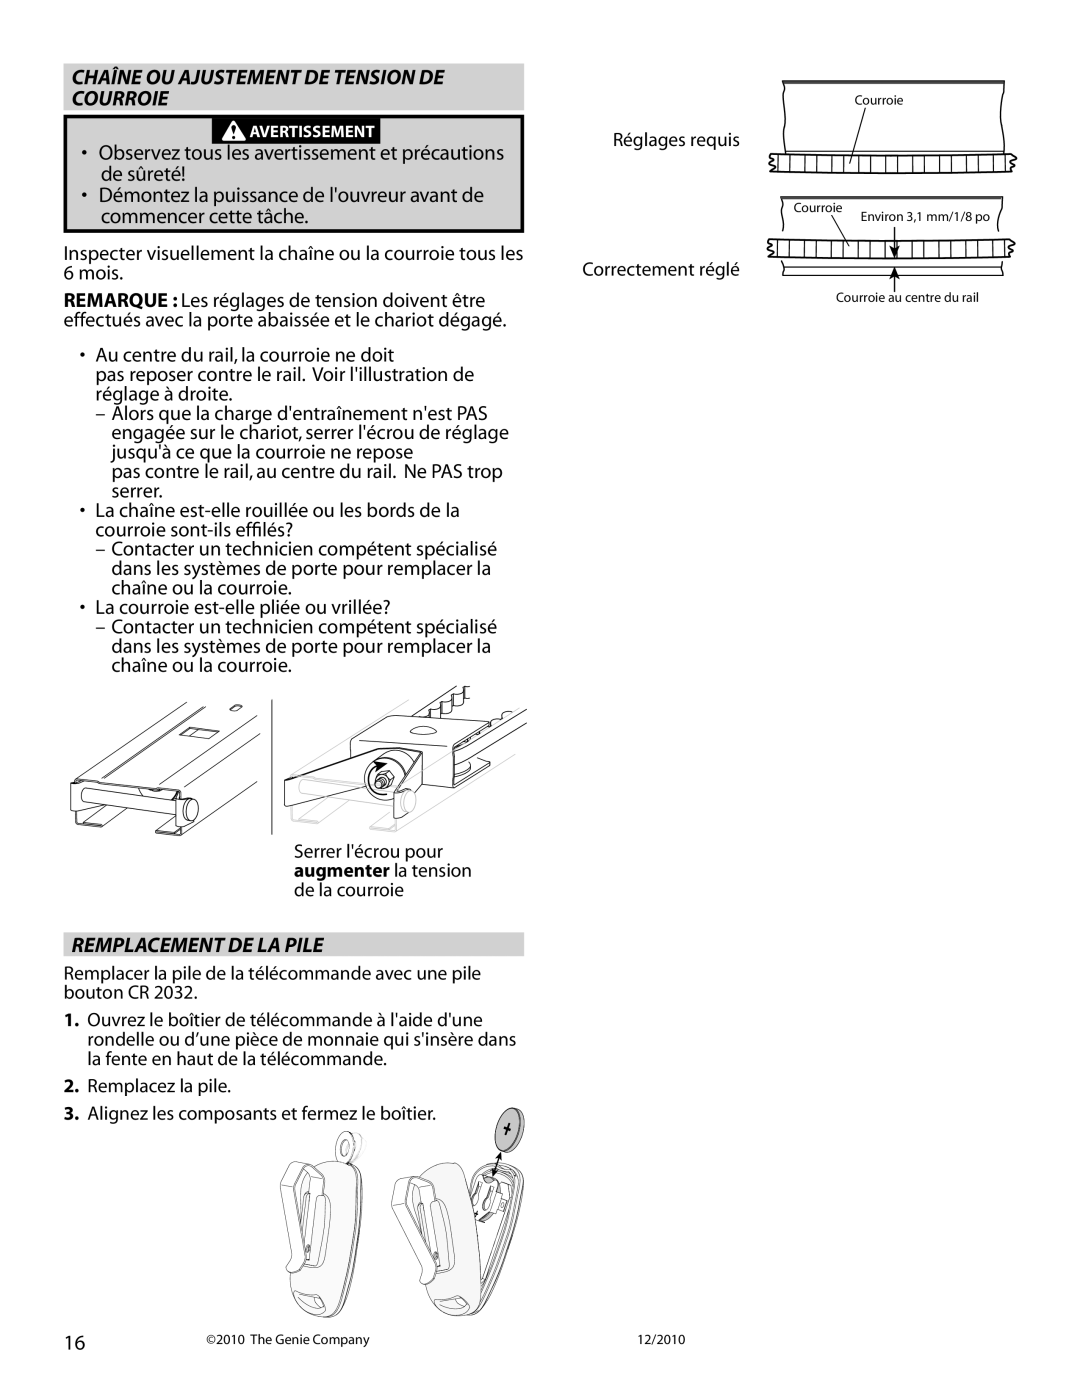 Genie 4042 manual Chaîne Ou Ajustement De Tension De Courroie, Remplacement De La Pile 